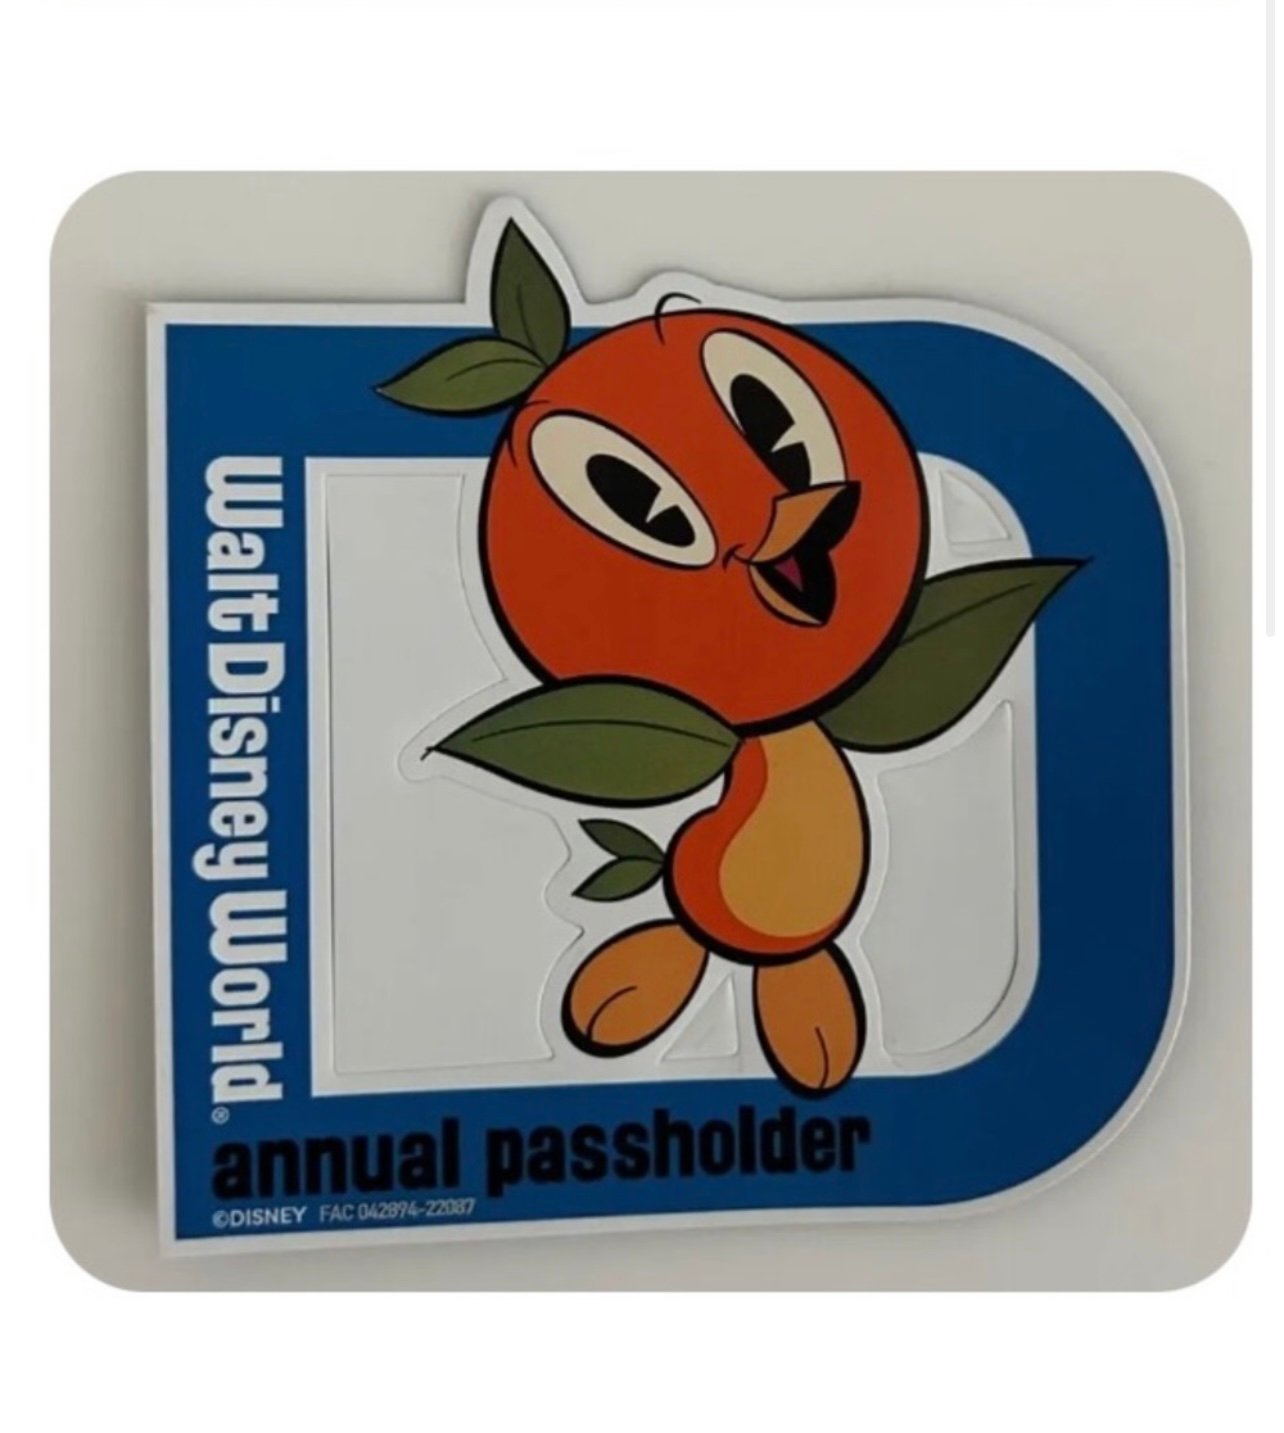 Disney passholder magnet New Orange Bird Disney Annual Pass holder Magnet ligIxp9V2